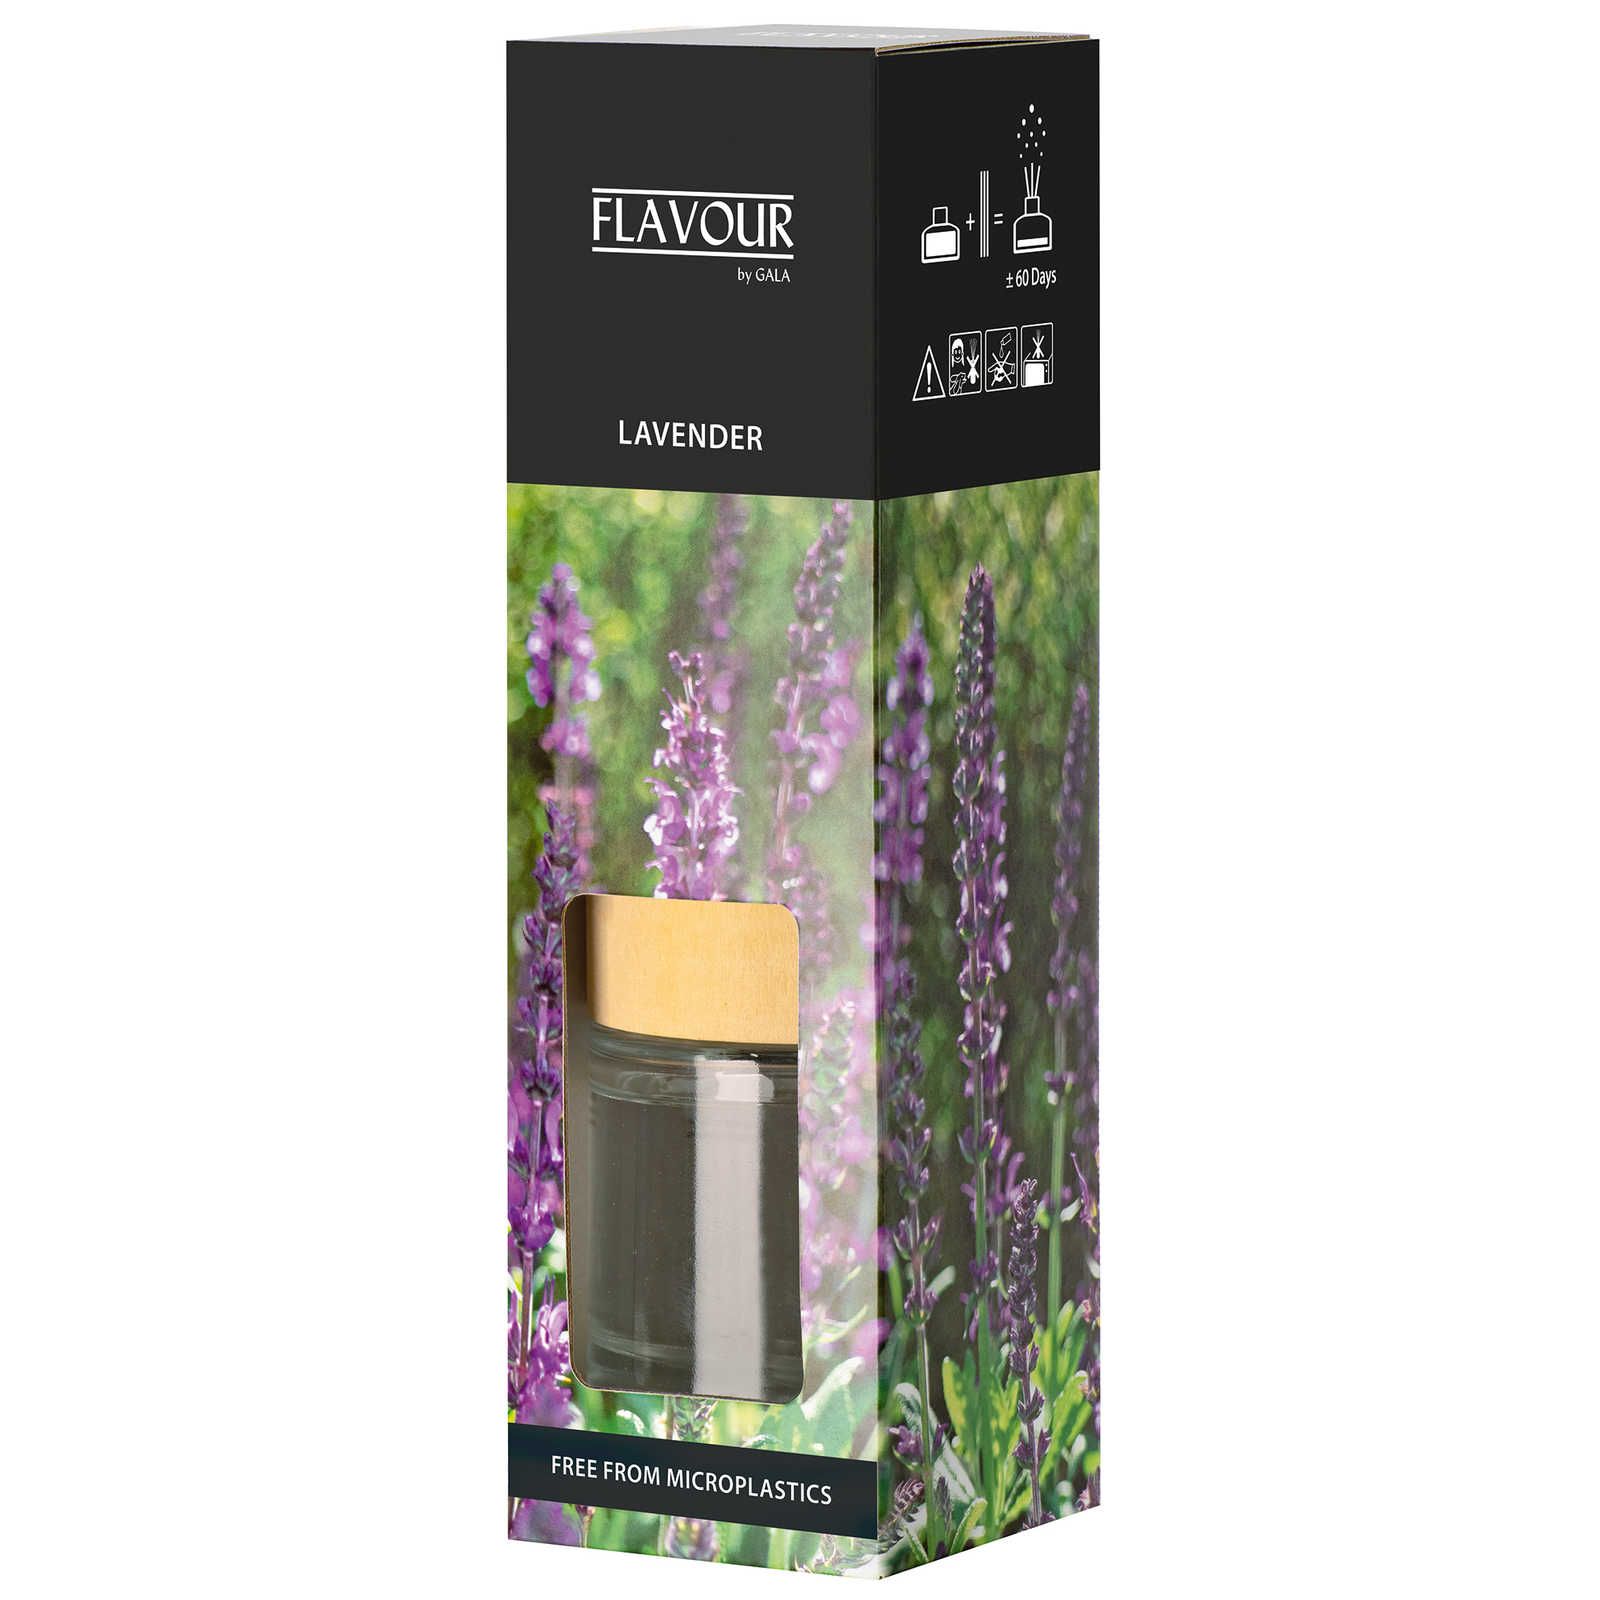         Lavendel Duftstäbchen mit beruhigenden Duft – 100ml
    